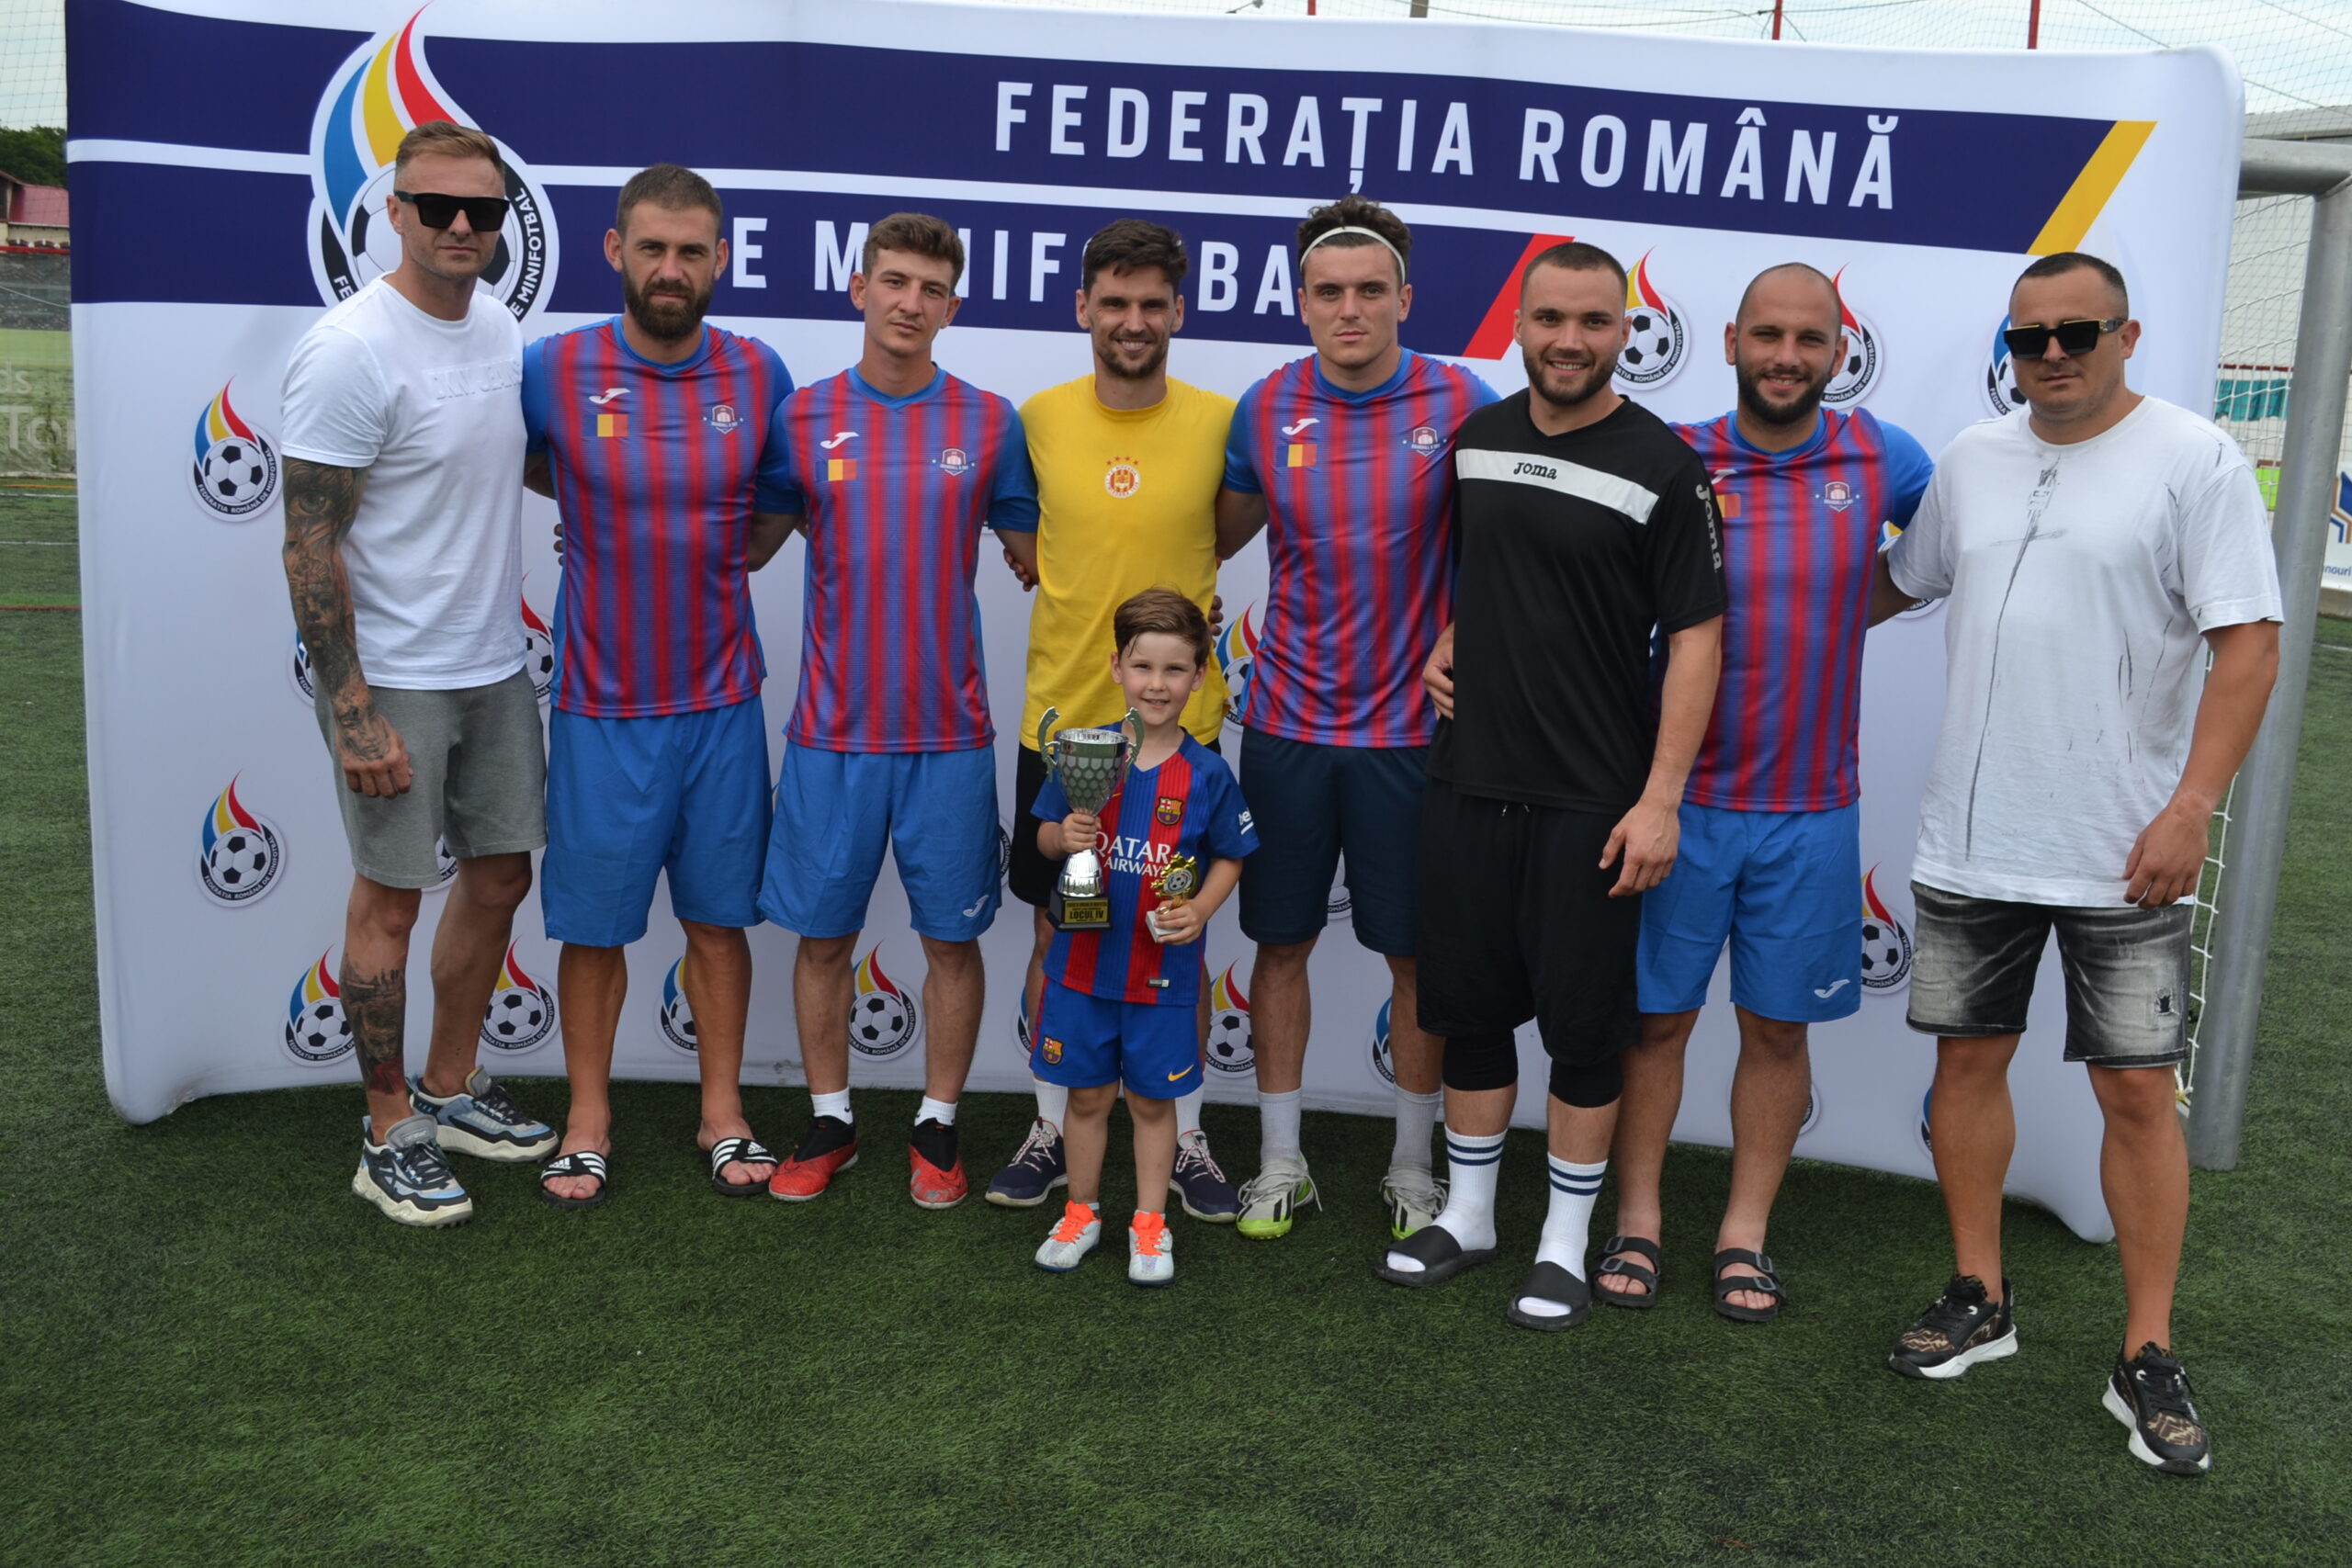 FOTO: Festivitatea de premiere Superliga României foto: Teodor Biriș